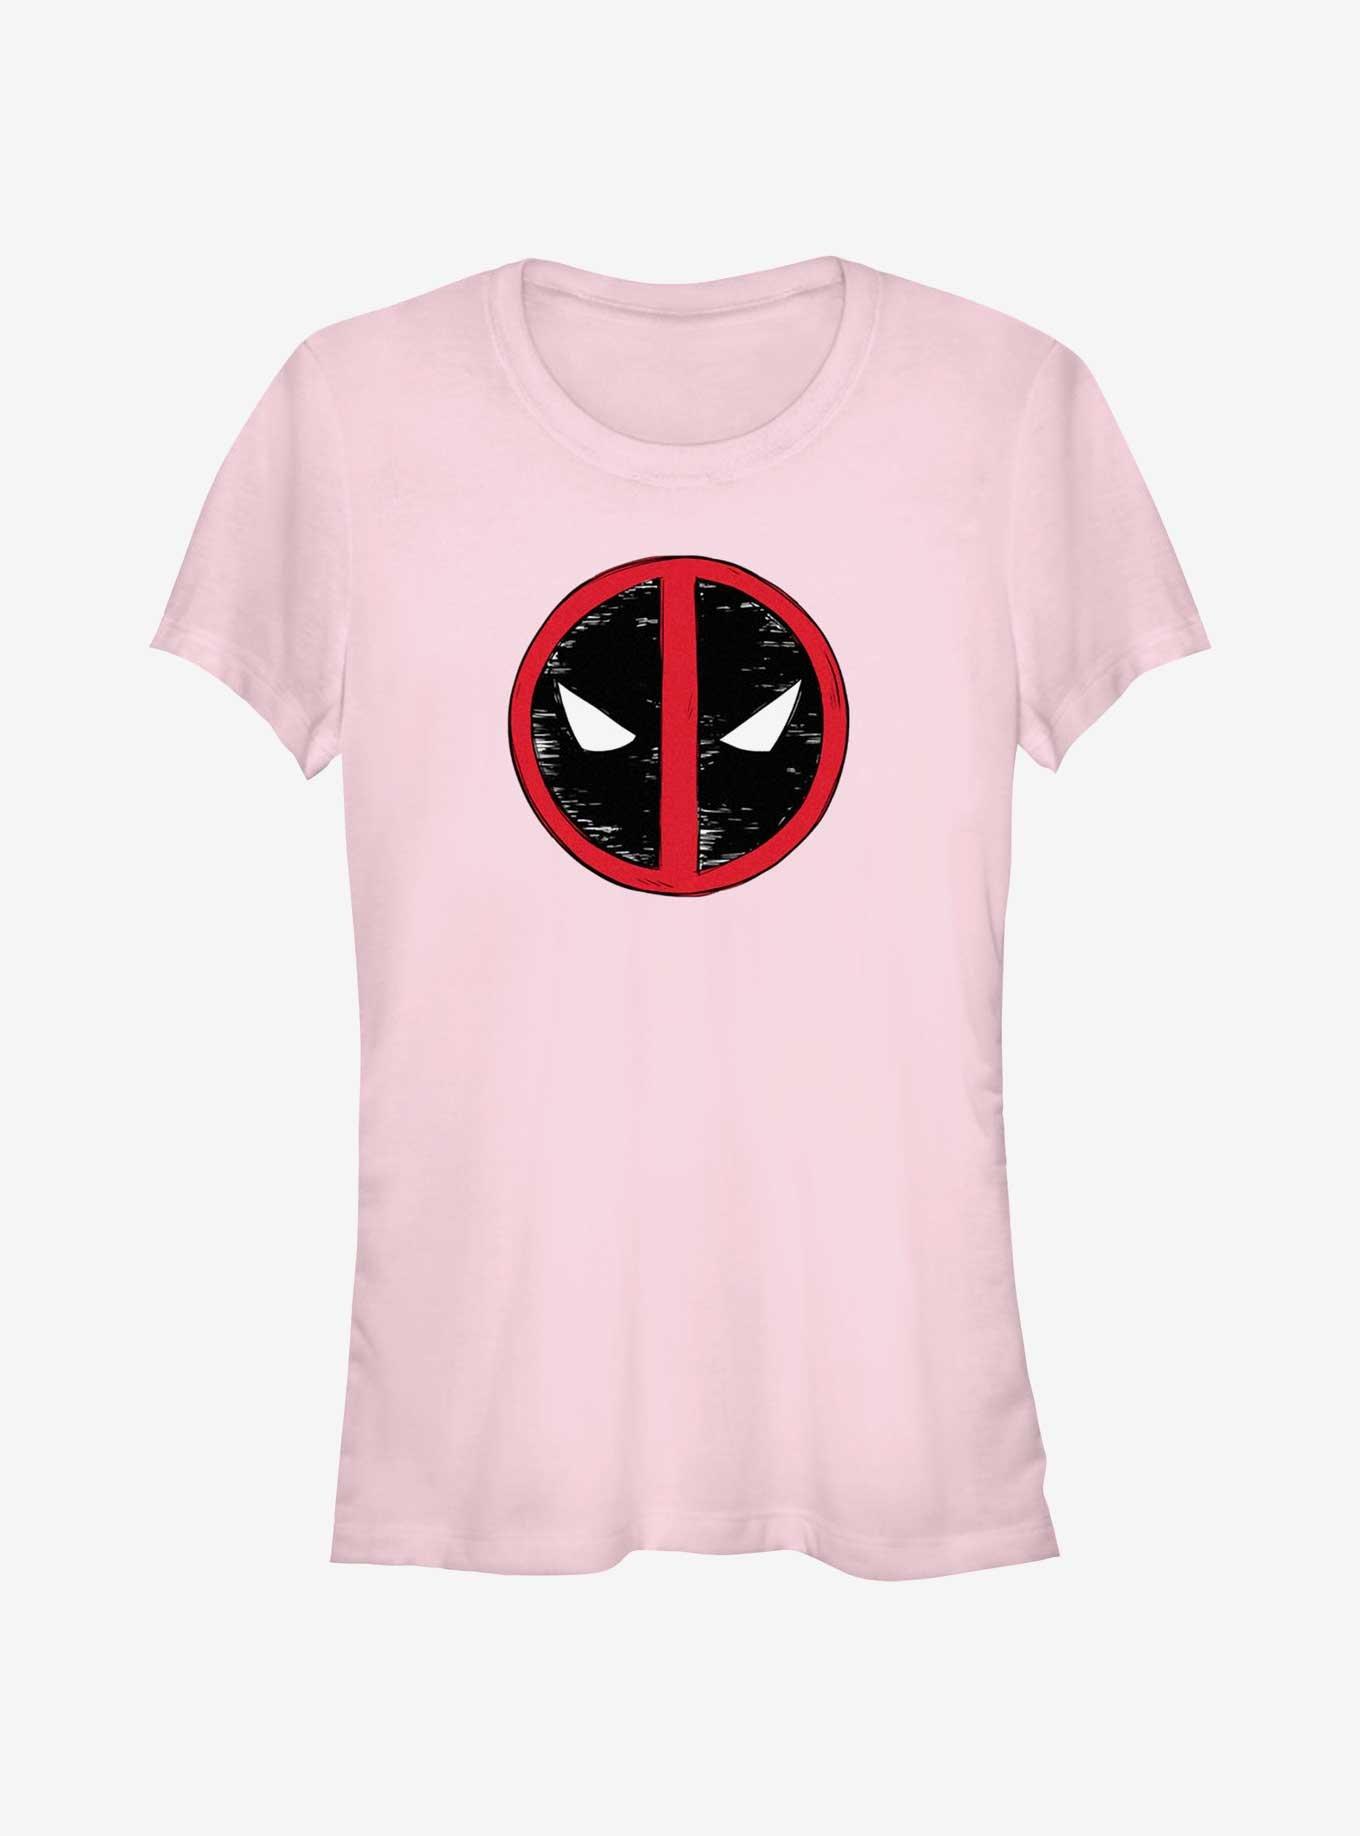 Marvel Deadpool & Wolverine Evil Eye Sketch Logo Girls T-Shirt, LIGHT PINK, hi-res